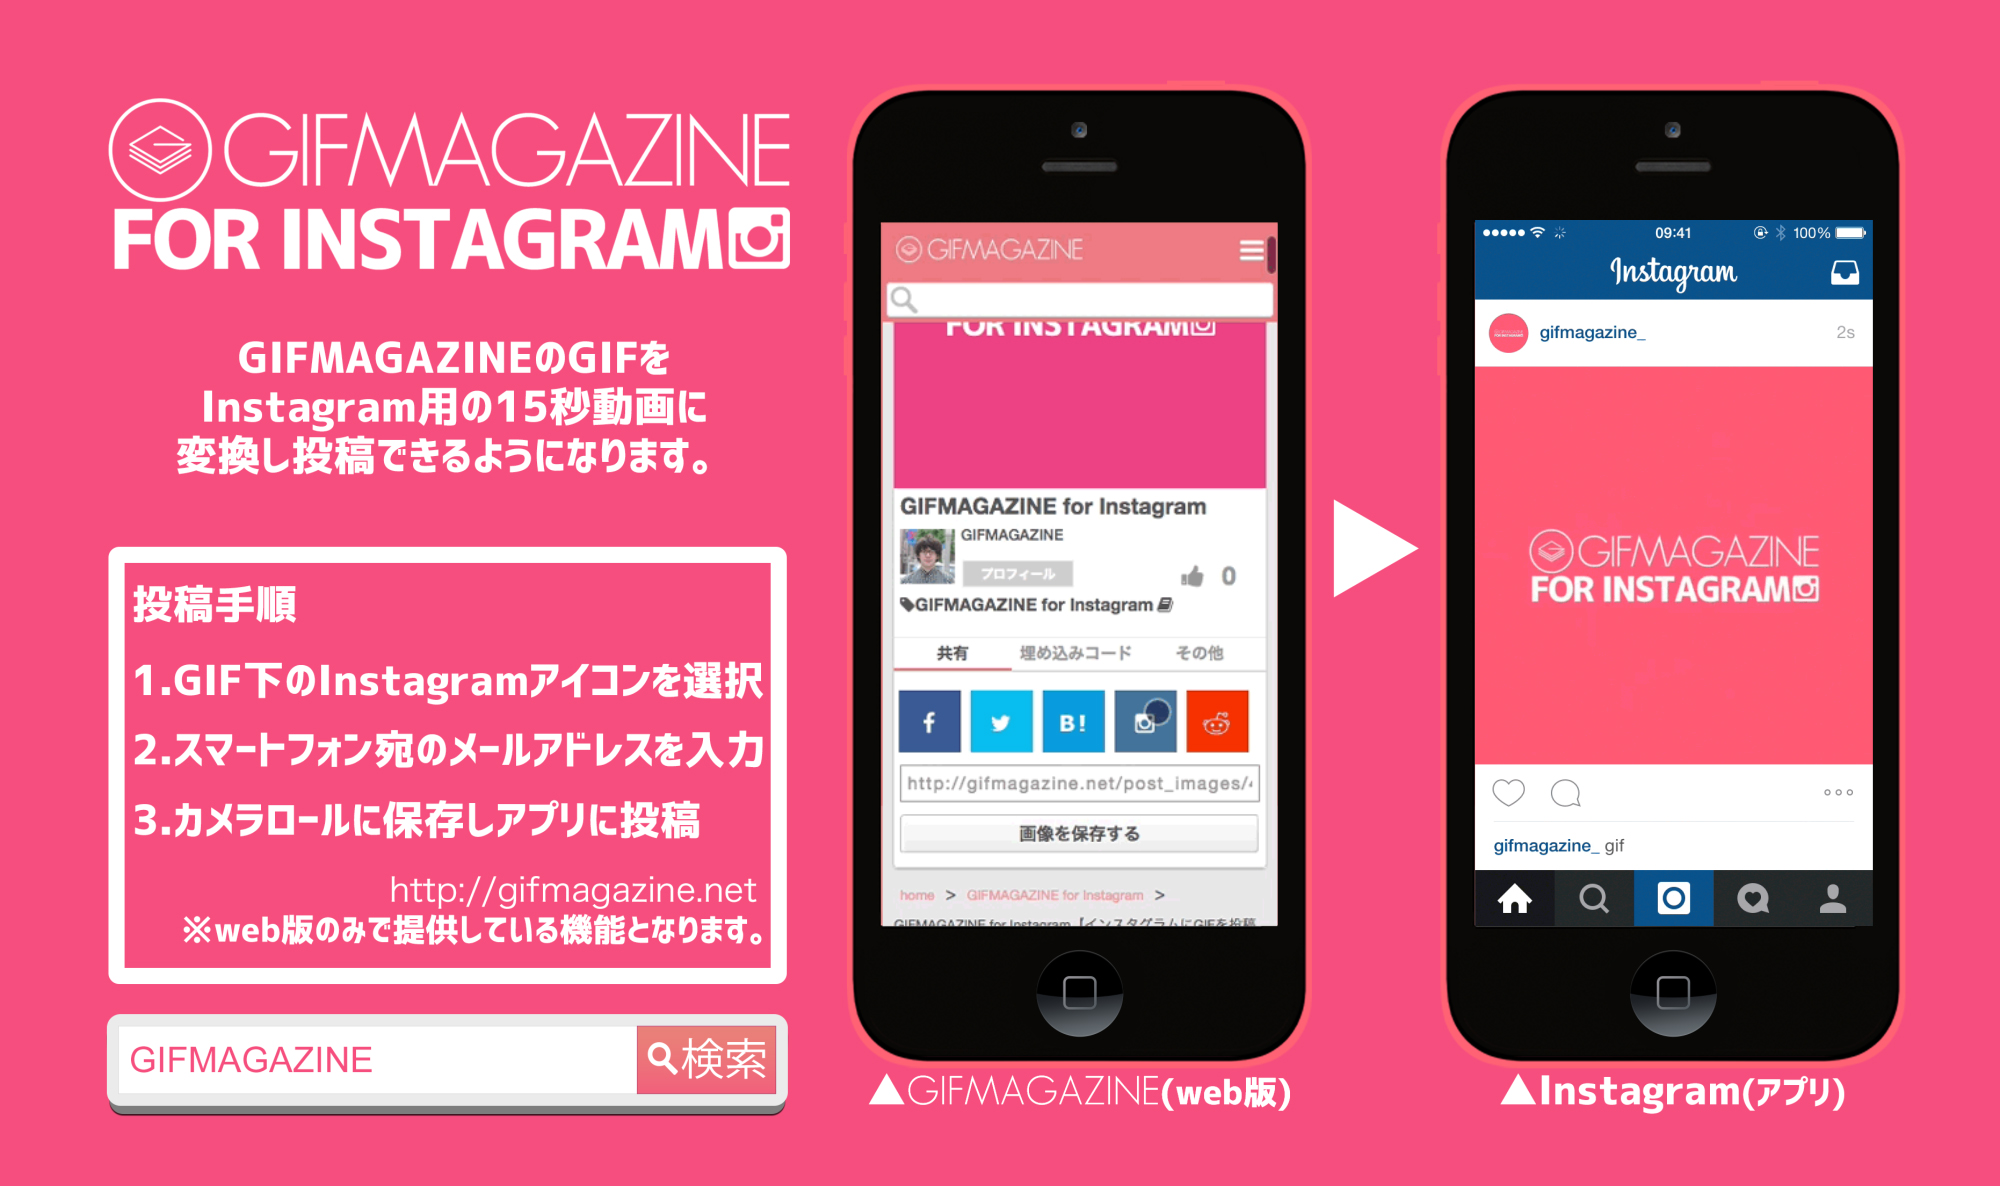 Gifmagazine Instagramにgifアニメを投稿できる機能をリリース 株式会社gifmagazineのプレスリリース